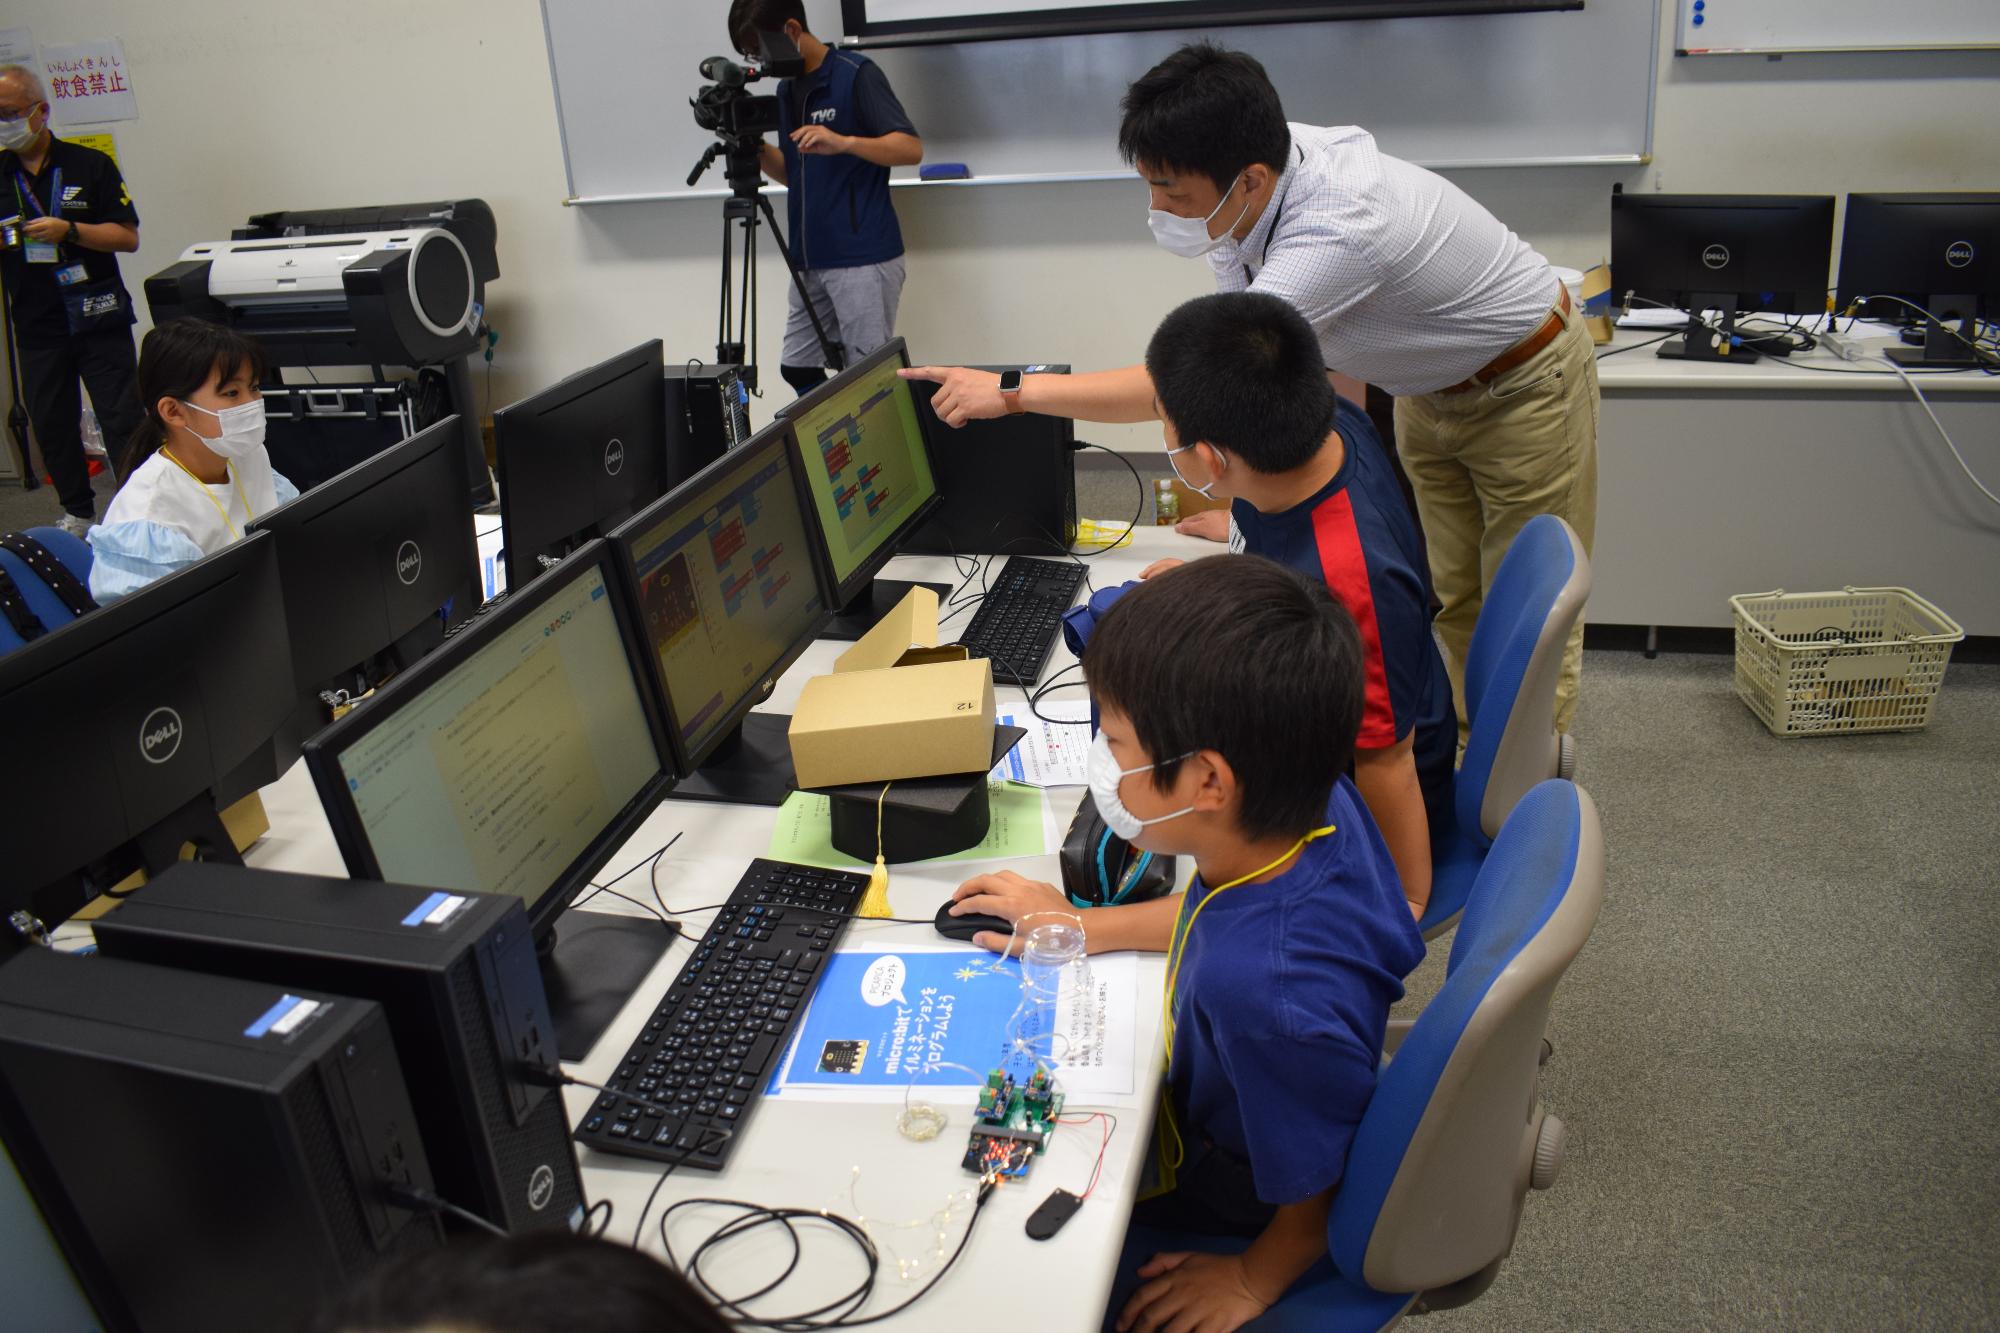 永井先生と学生2人の指導で、全員がオリジナルのプログラムを作りました。